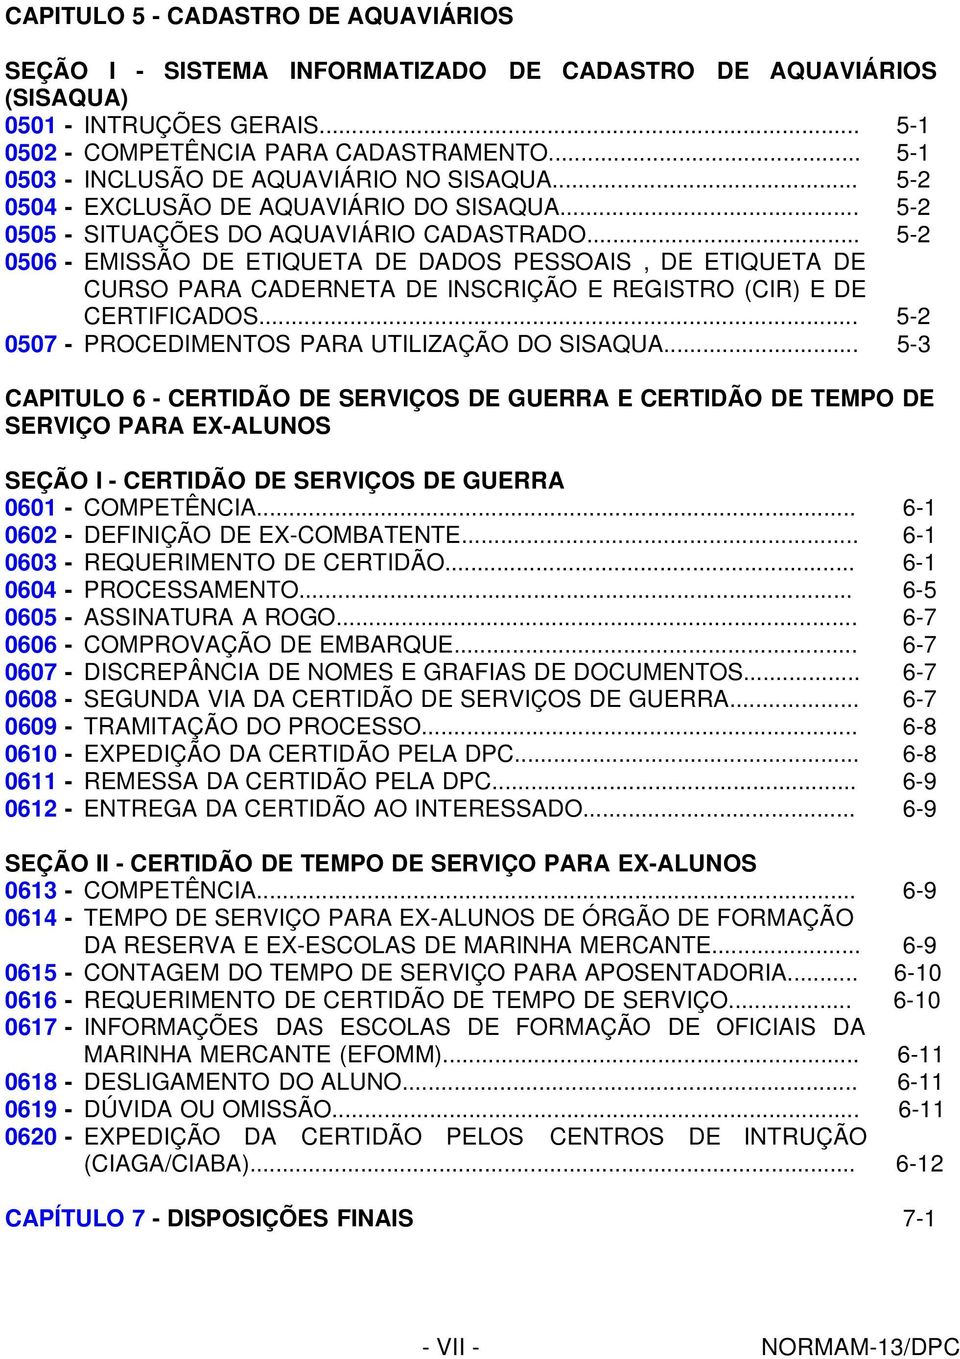 .. 5-2 0506 - EMISSÃO DE ETIQUETA DE DADOS PESSOAIS, DE ETIQUETA DE CURSO PARA CADERNETA DE INSCRIÇÃO E REGISTRO (CIR) E DE CERTIFICADOS... 5-2 0507 - PROCEDIMENTOS PARA UTILIZAÇÃO DO SISAQUA.